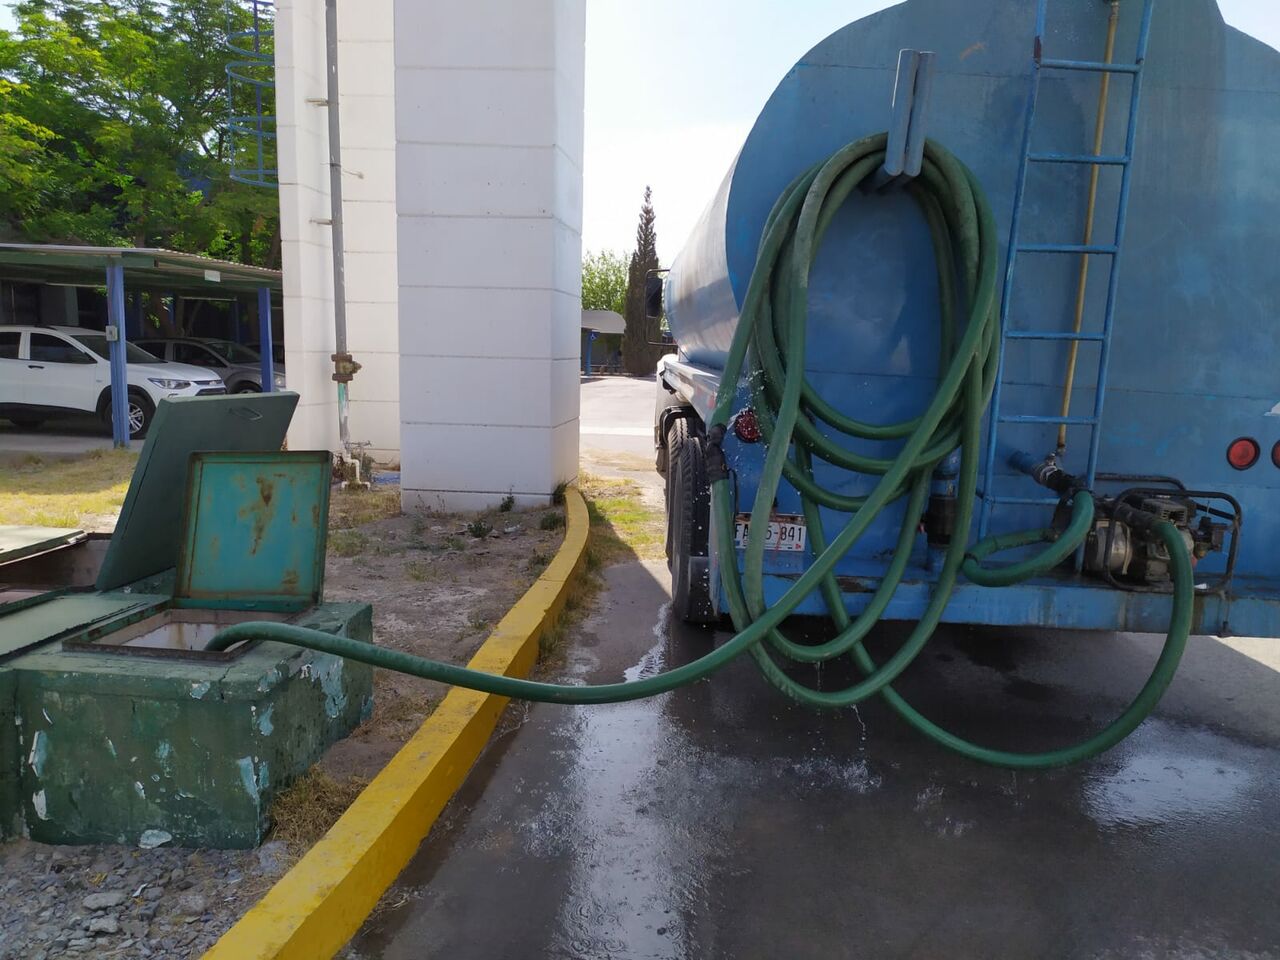 No son extremos los problemas por abasto de agua en Monclova: alcalde